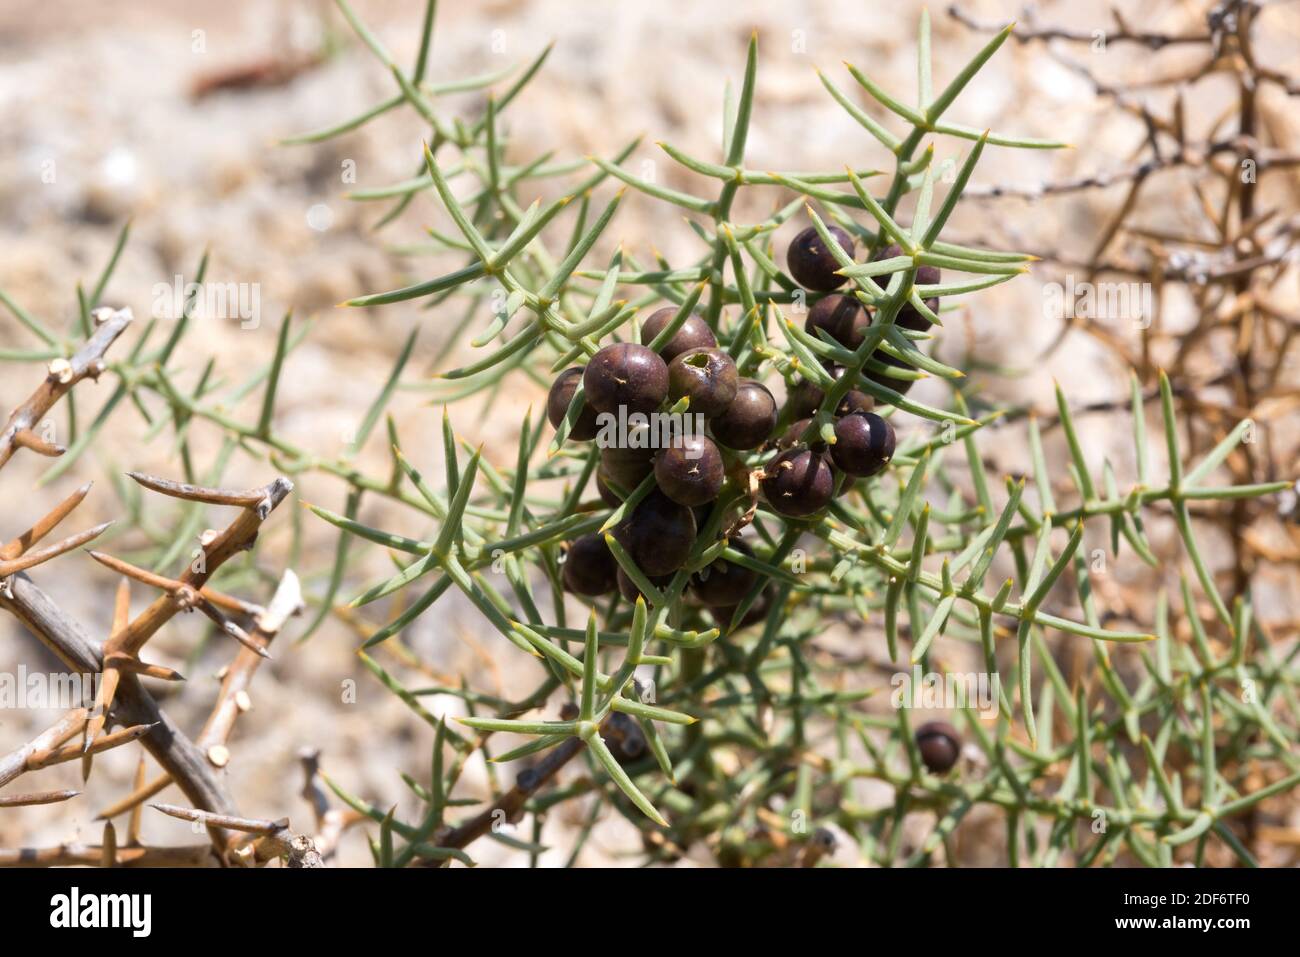 Esparraguera de monte (Asparagus horridus) es un arbusto espinoso nativo de la cuenca mediterránea occidental. Detalle de frutas y espinas. Este fot fue tomado Foto de stock